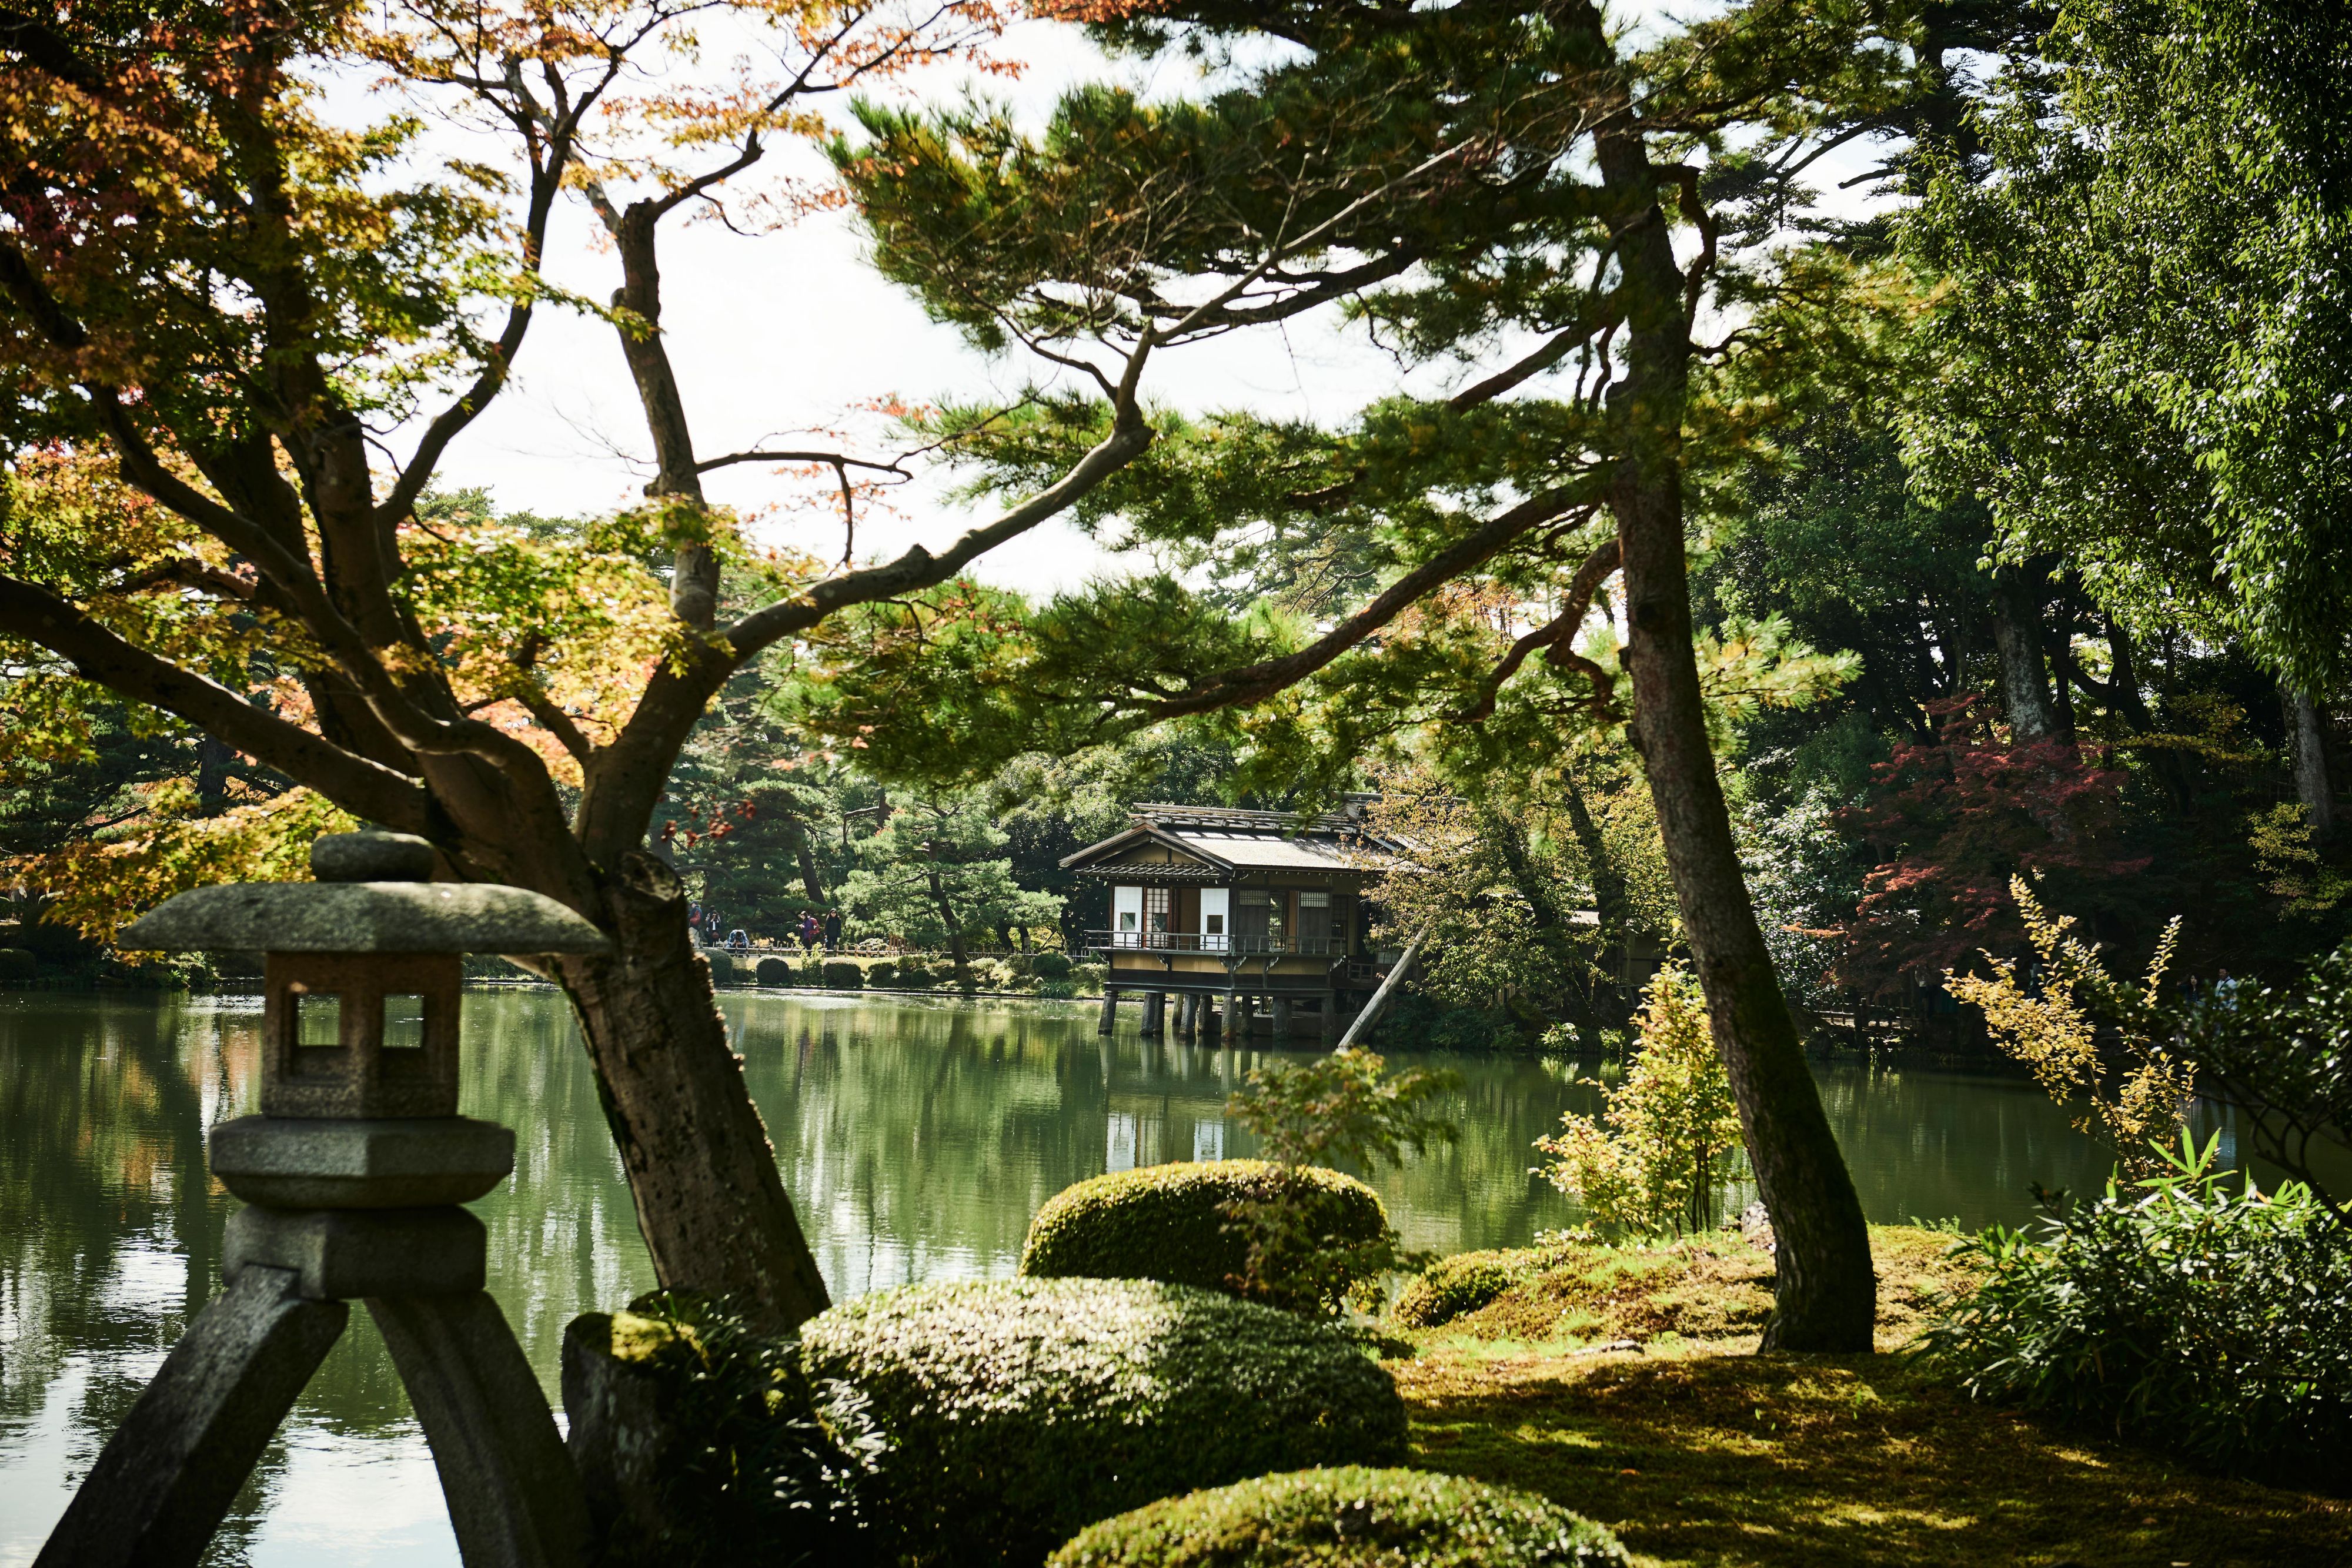 Kenroku-en,a strolling-style landscape garden counted